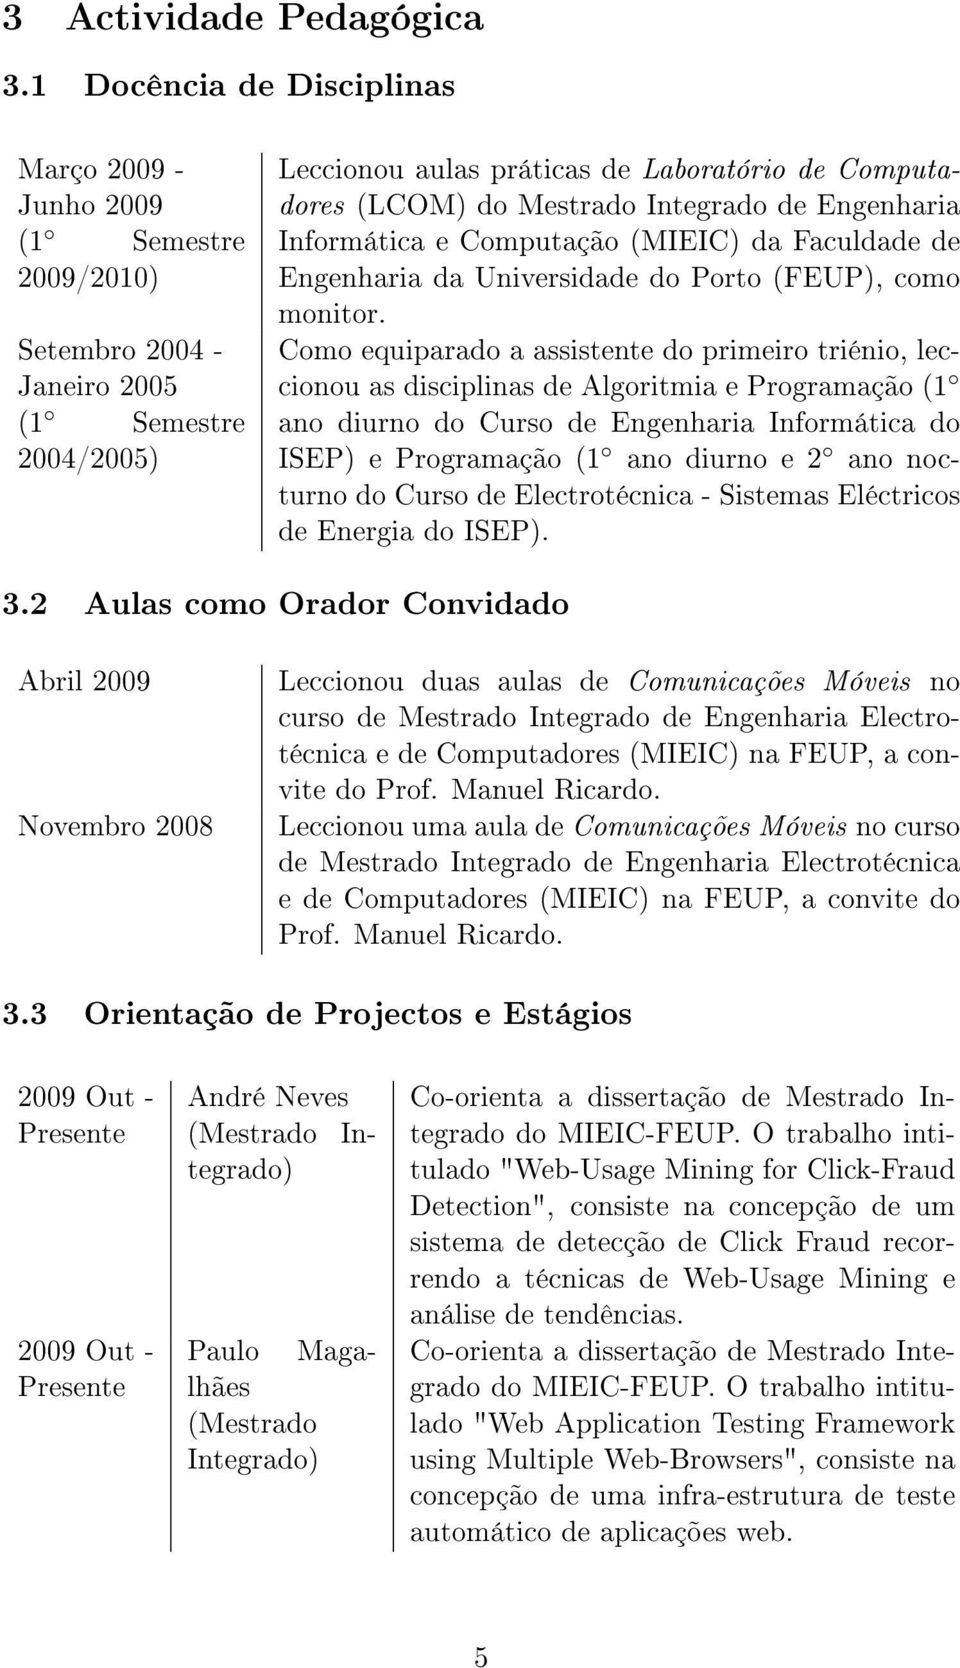 Integrado de Engenharia Informática e Computação (MIEIC) da Faculdade de Engenharia da Universidade do Porto (FEUP), como monitor.